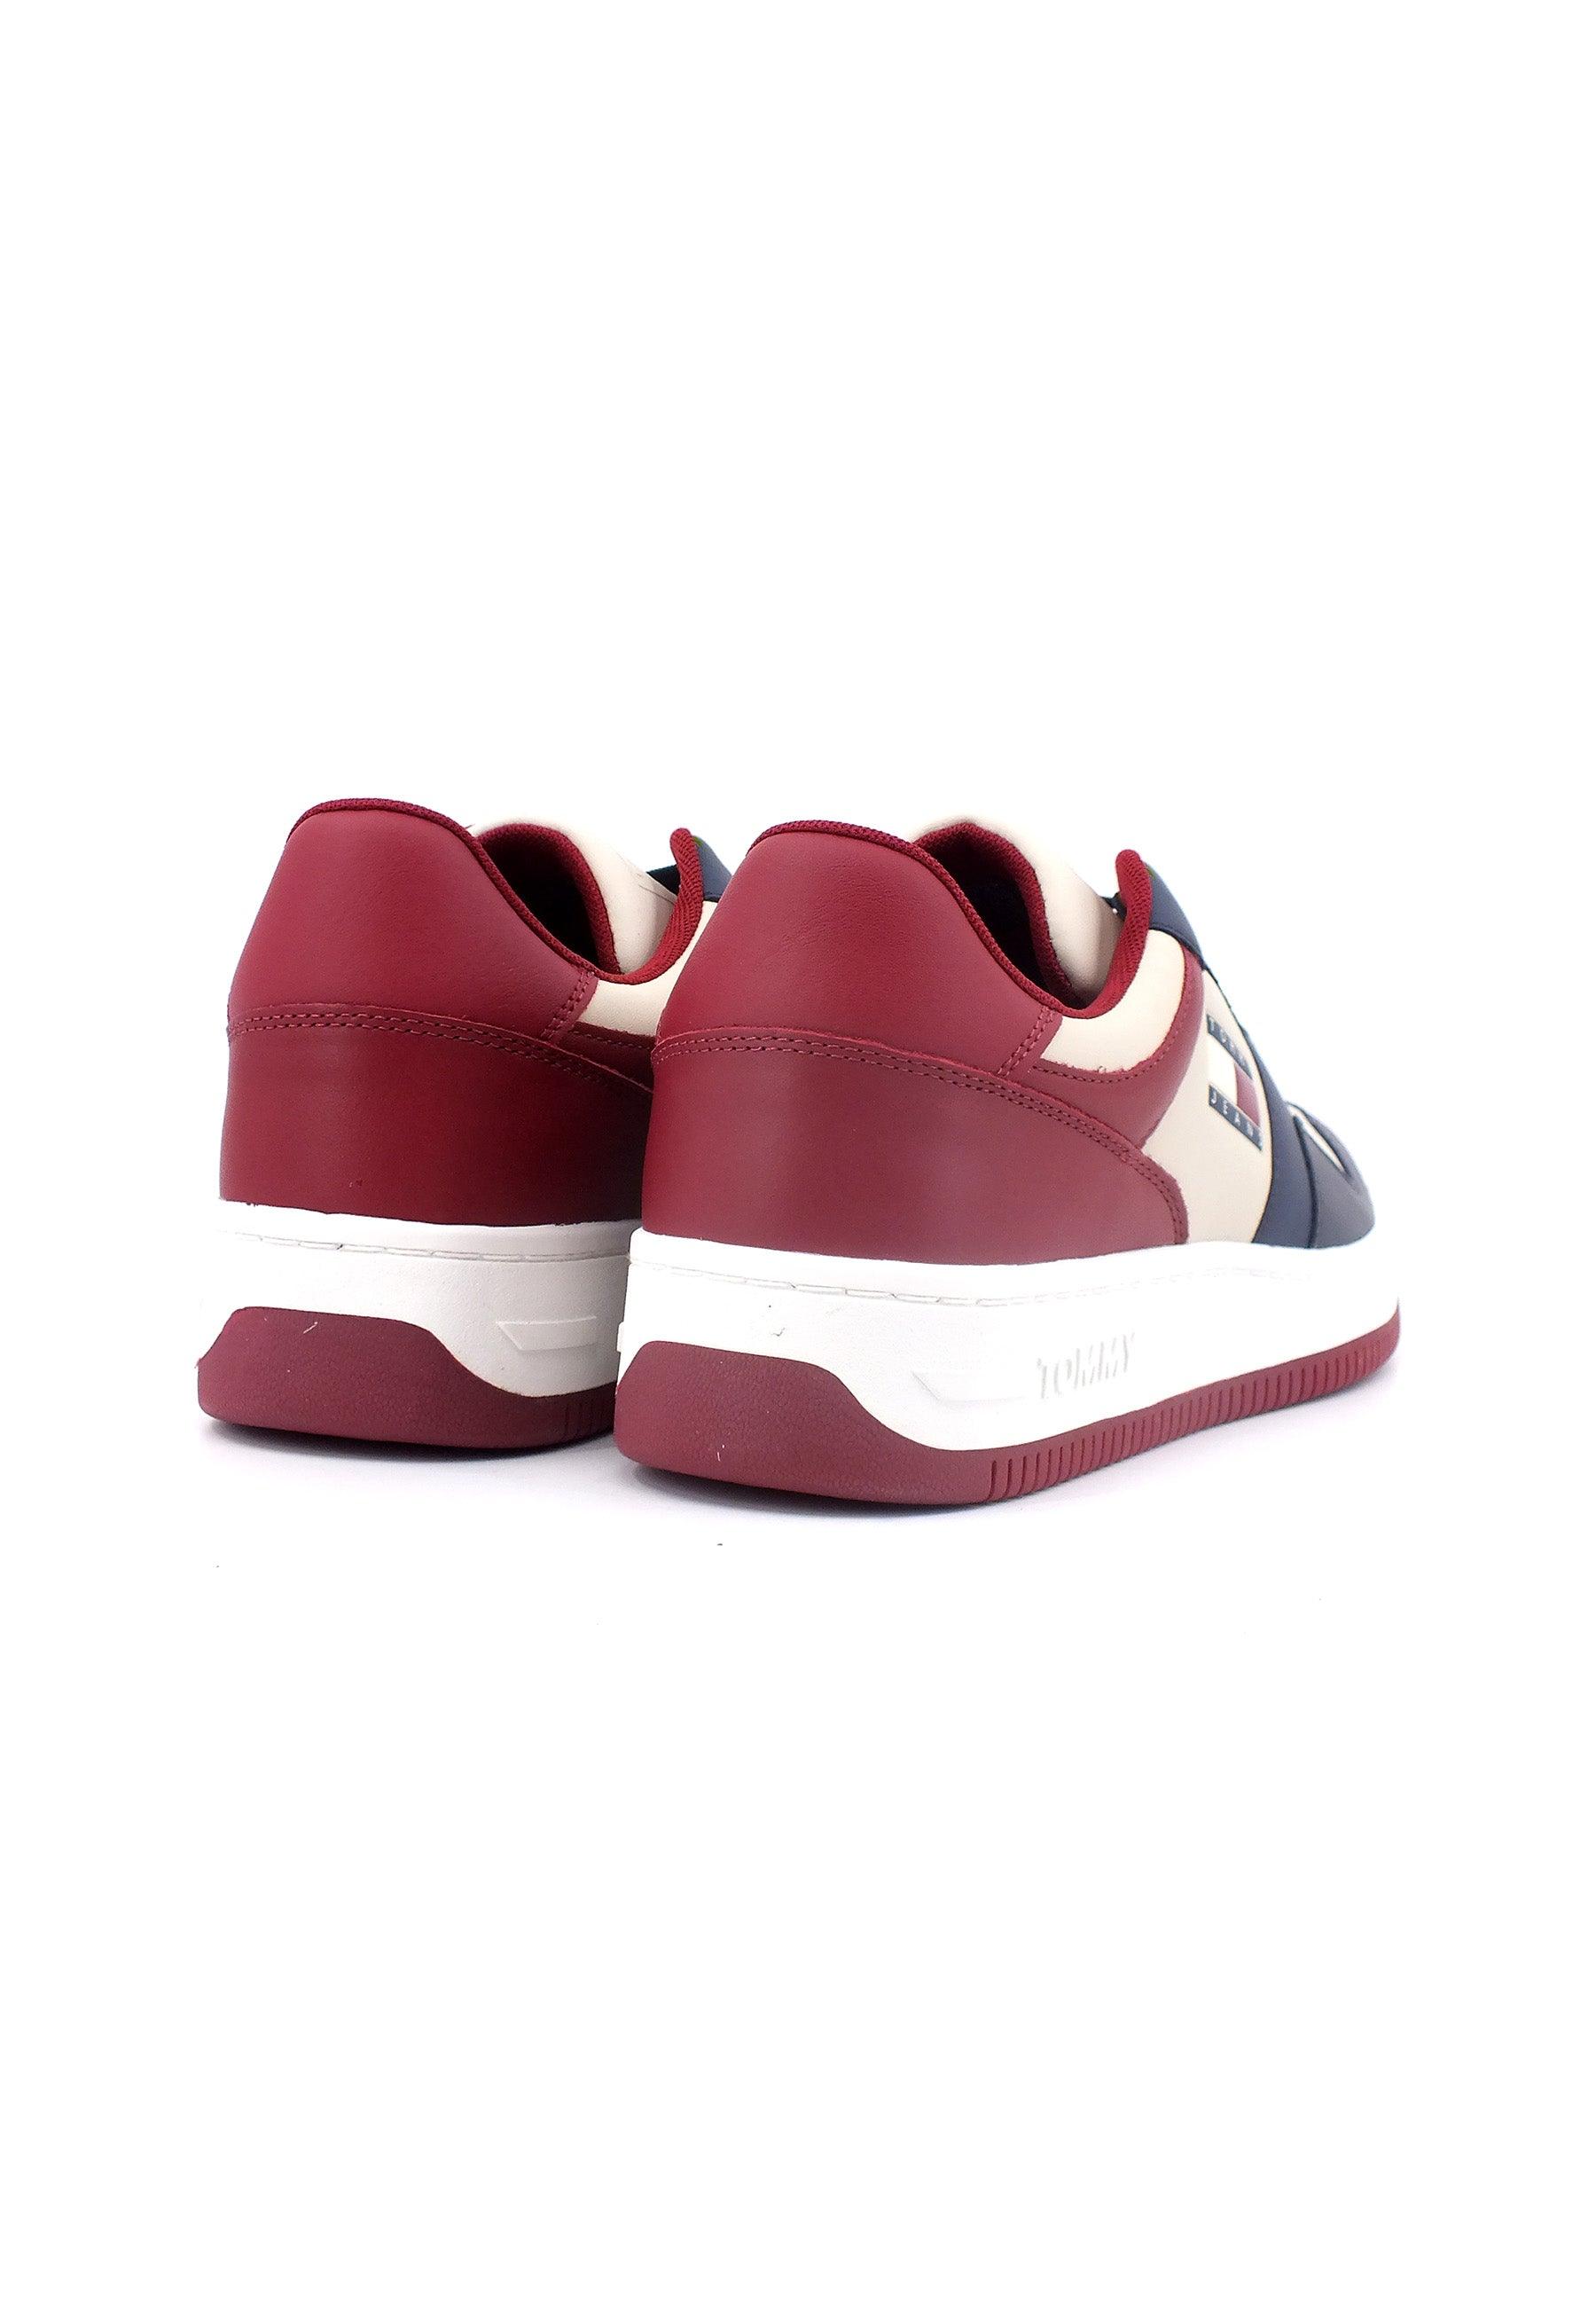 TOMMY HILFIGER Basket Premium Sneaker Uomo Navy Rouge Ecru EM0EM1256 - Sandrini Calzature e Abbigliamento